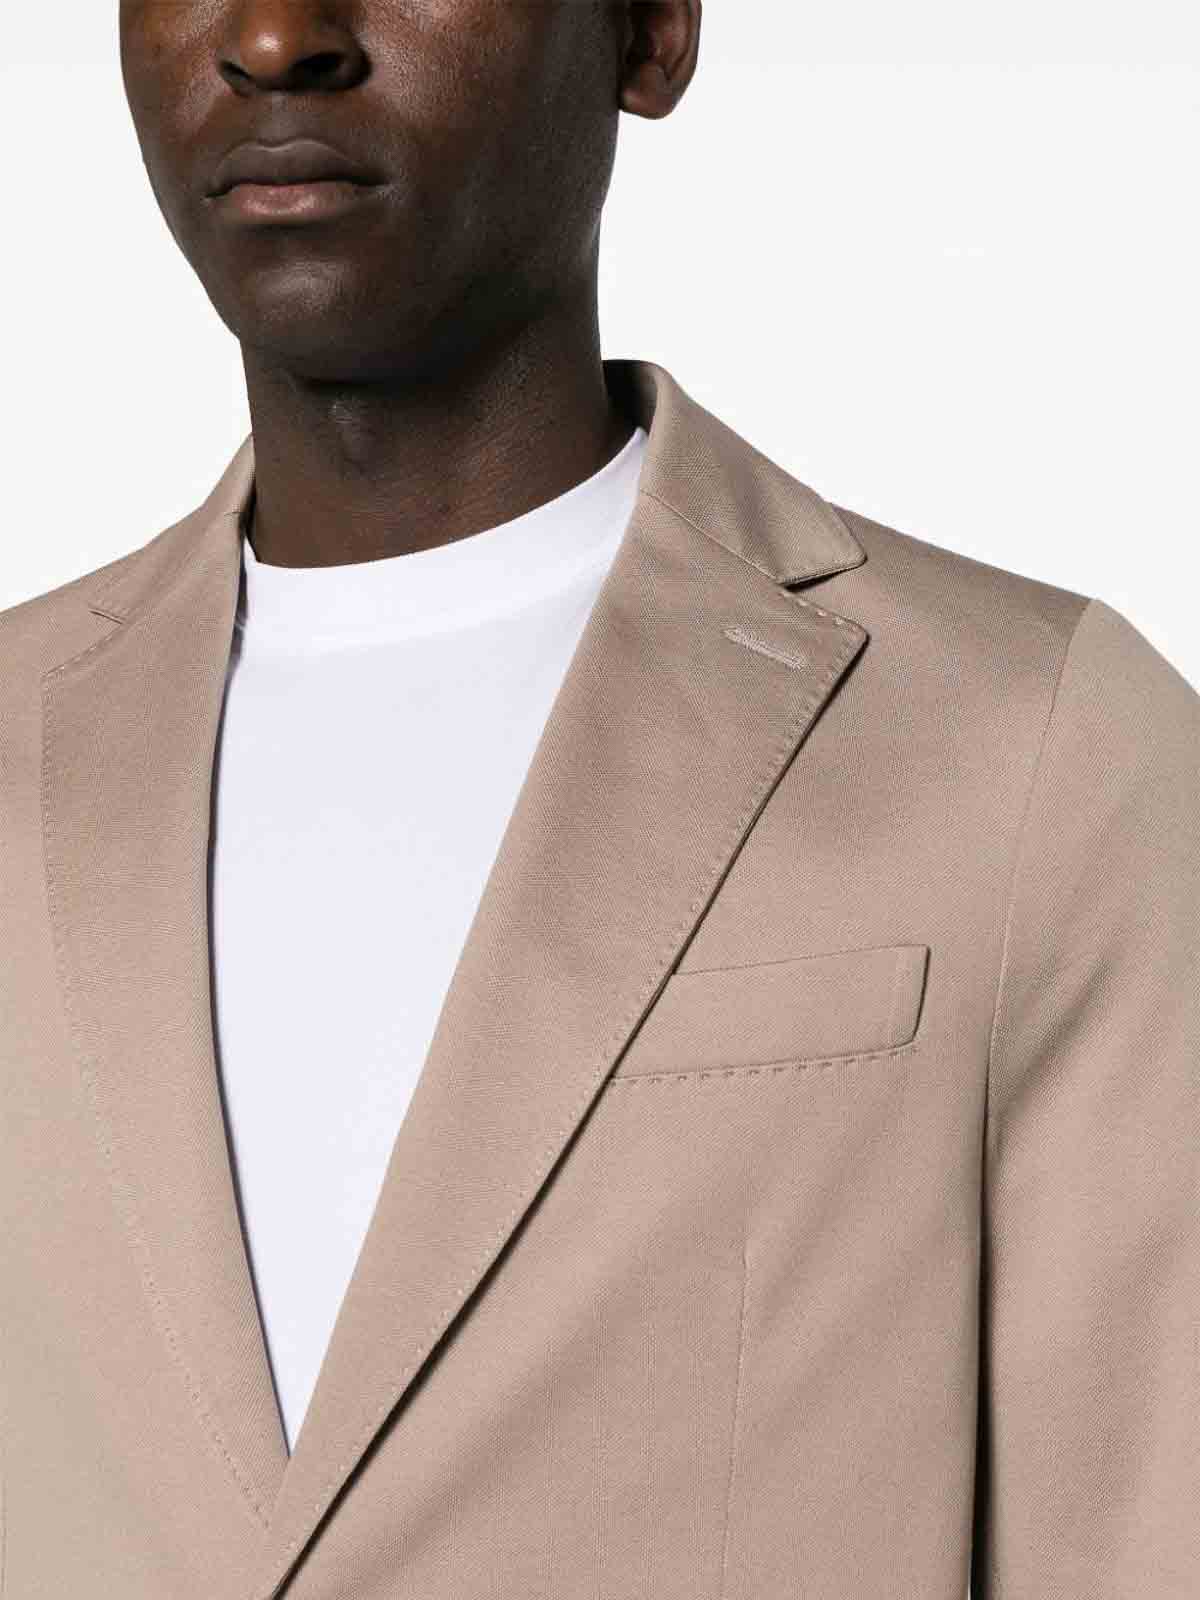 Shop Circolo 1901 Single-breasted Pique Jacket In Grey